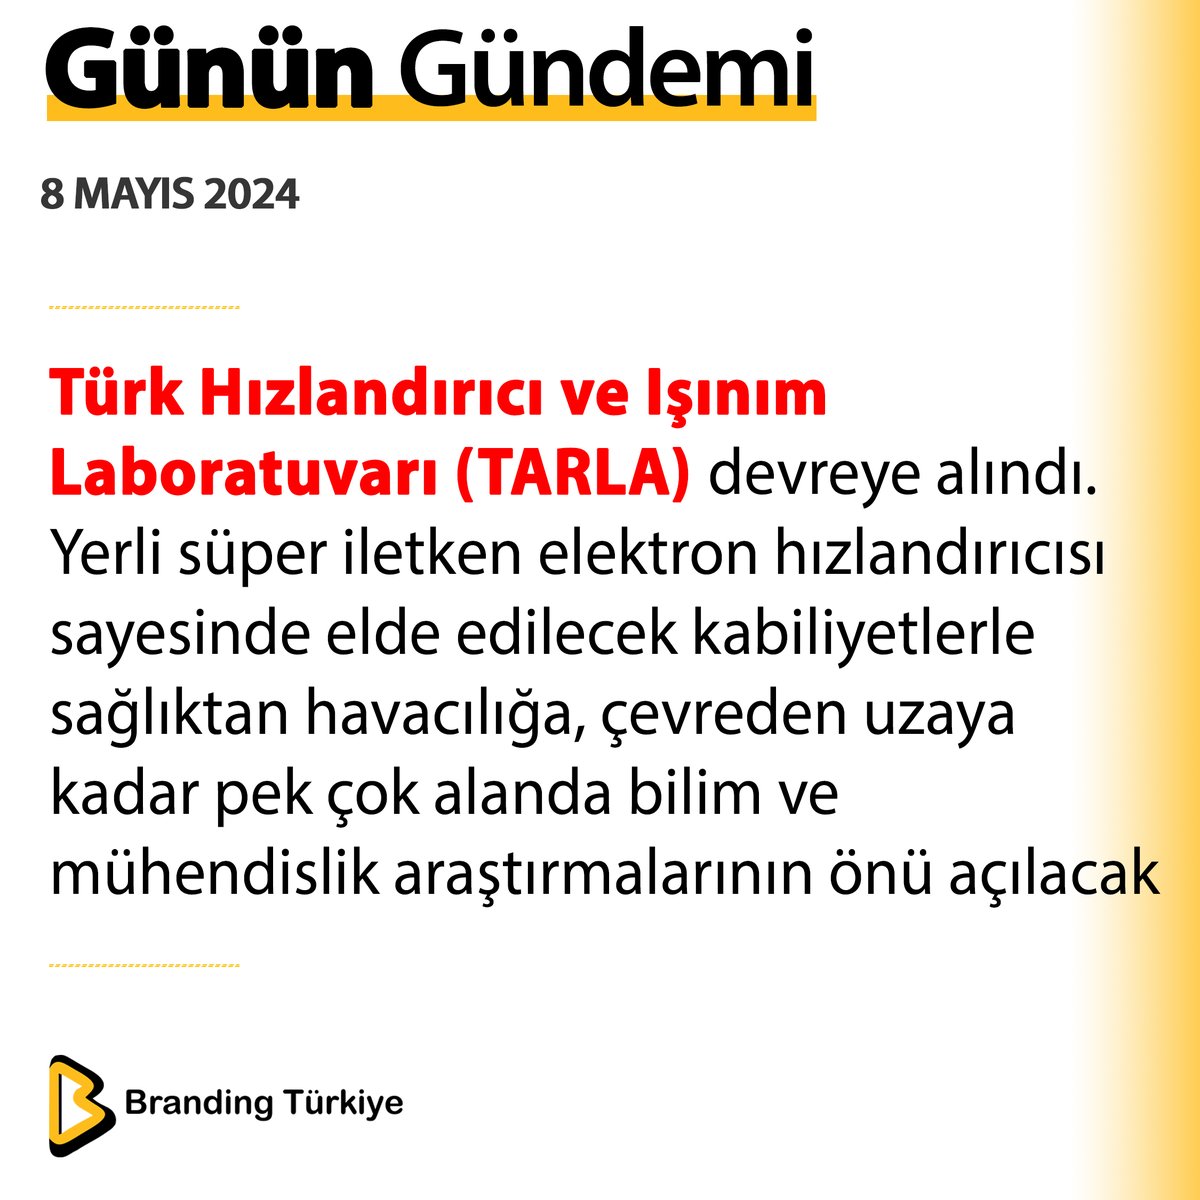 #8Mayıs2024

Türk Hızlandırıcı ve Işınım Laboratuvarı (TARLA) devreye alındı.

▶ brandingturkiye.com
#BrandingTürkiye #Haberler #Bilim #Sanayi #Teknoloji #TARLA #Işınım #Laboratuvar #Hızlandırıcı